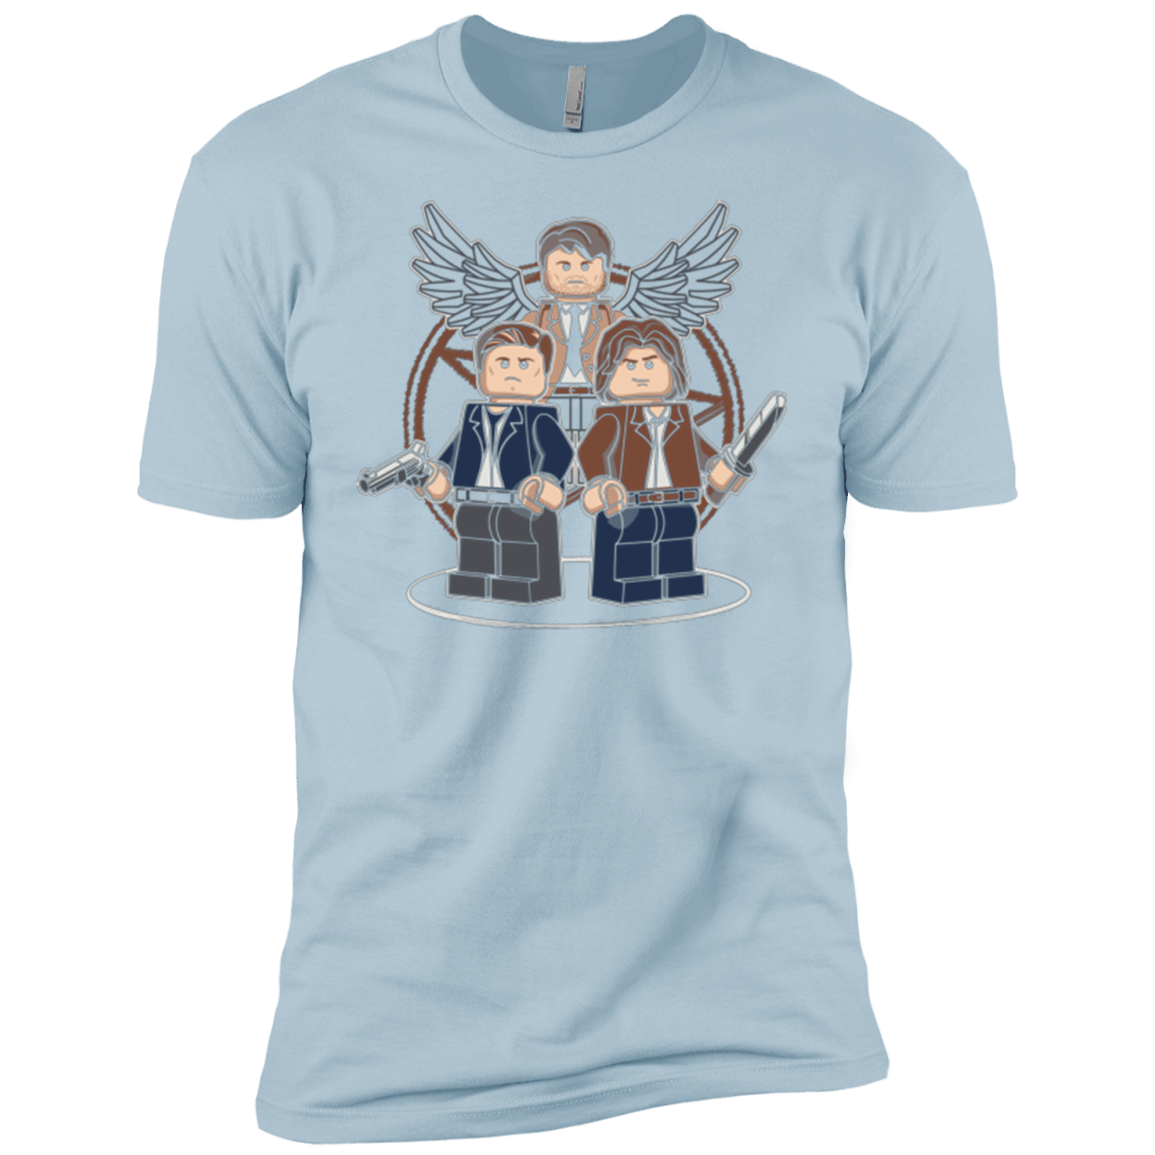 T-Shirts Light Blue / YXS Mini Hunters Boys Premium T-Shirt